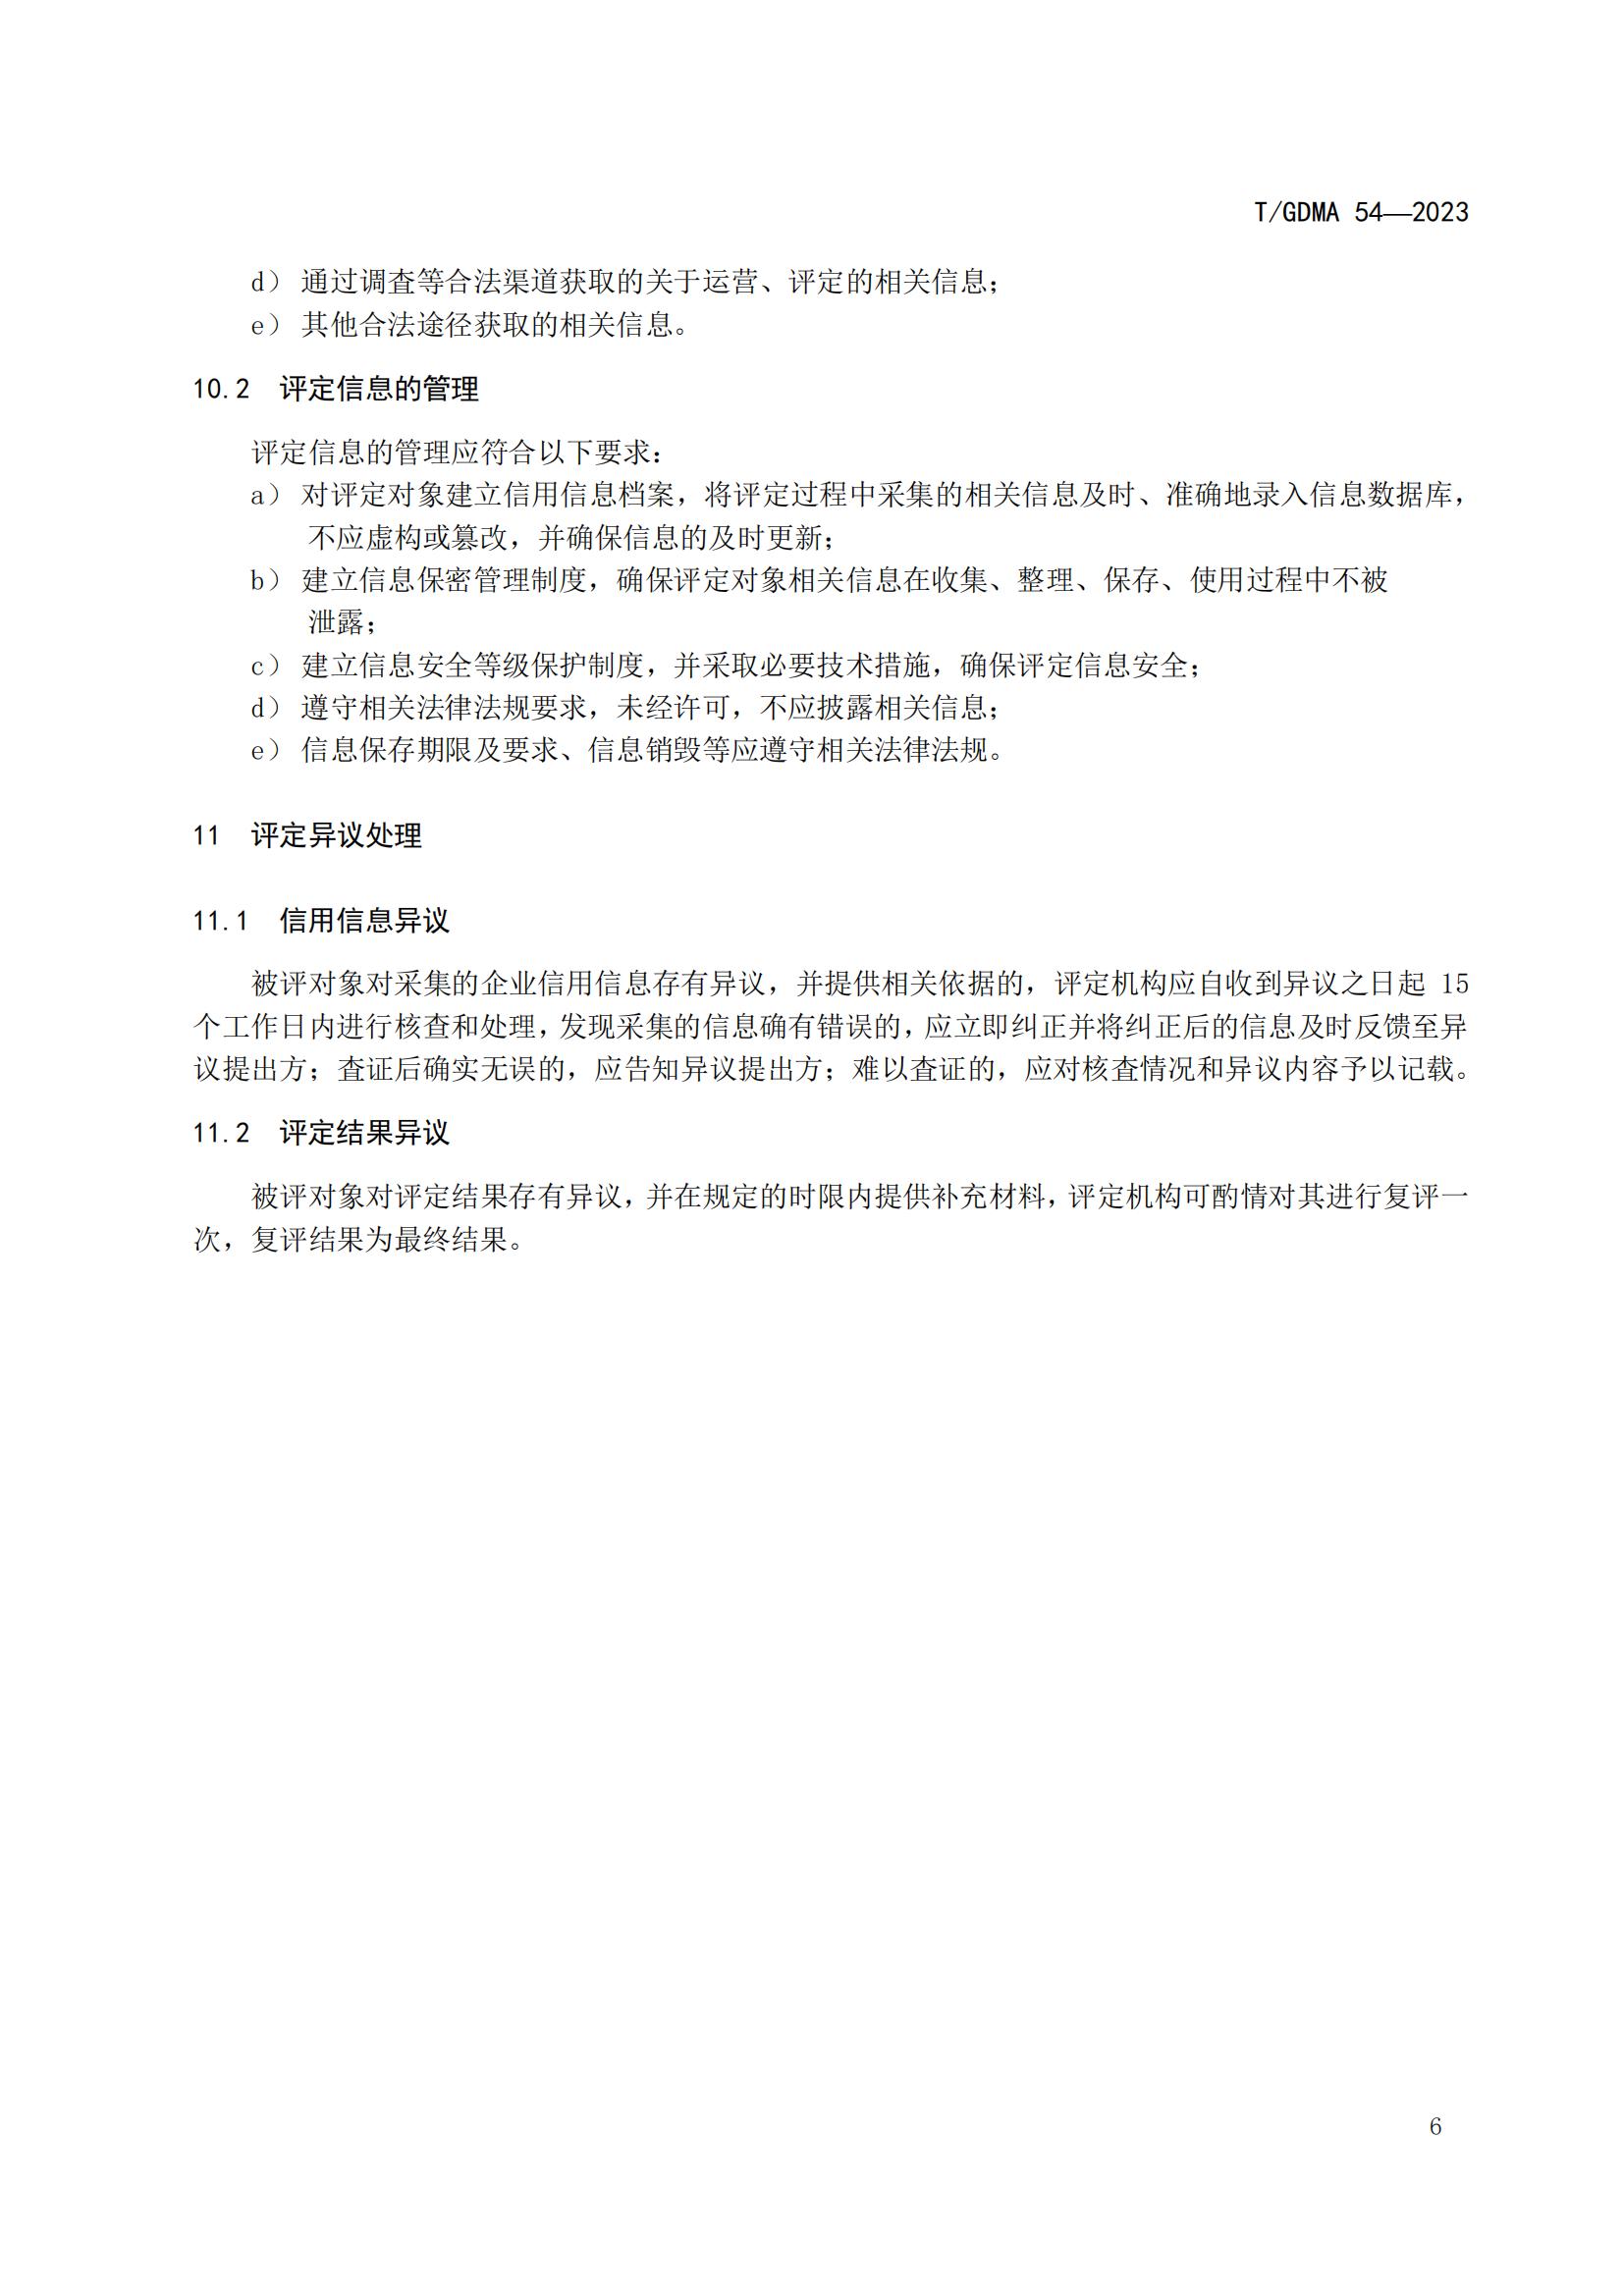 20230427 广东省诚信经营企业评定规范意见（发布稿）(1)(1)_06.jpg